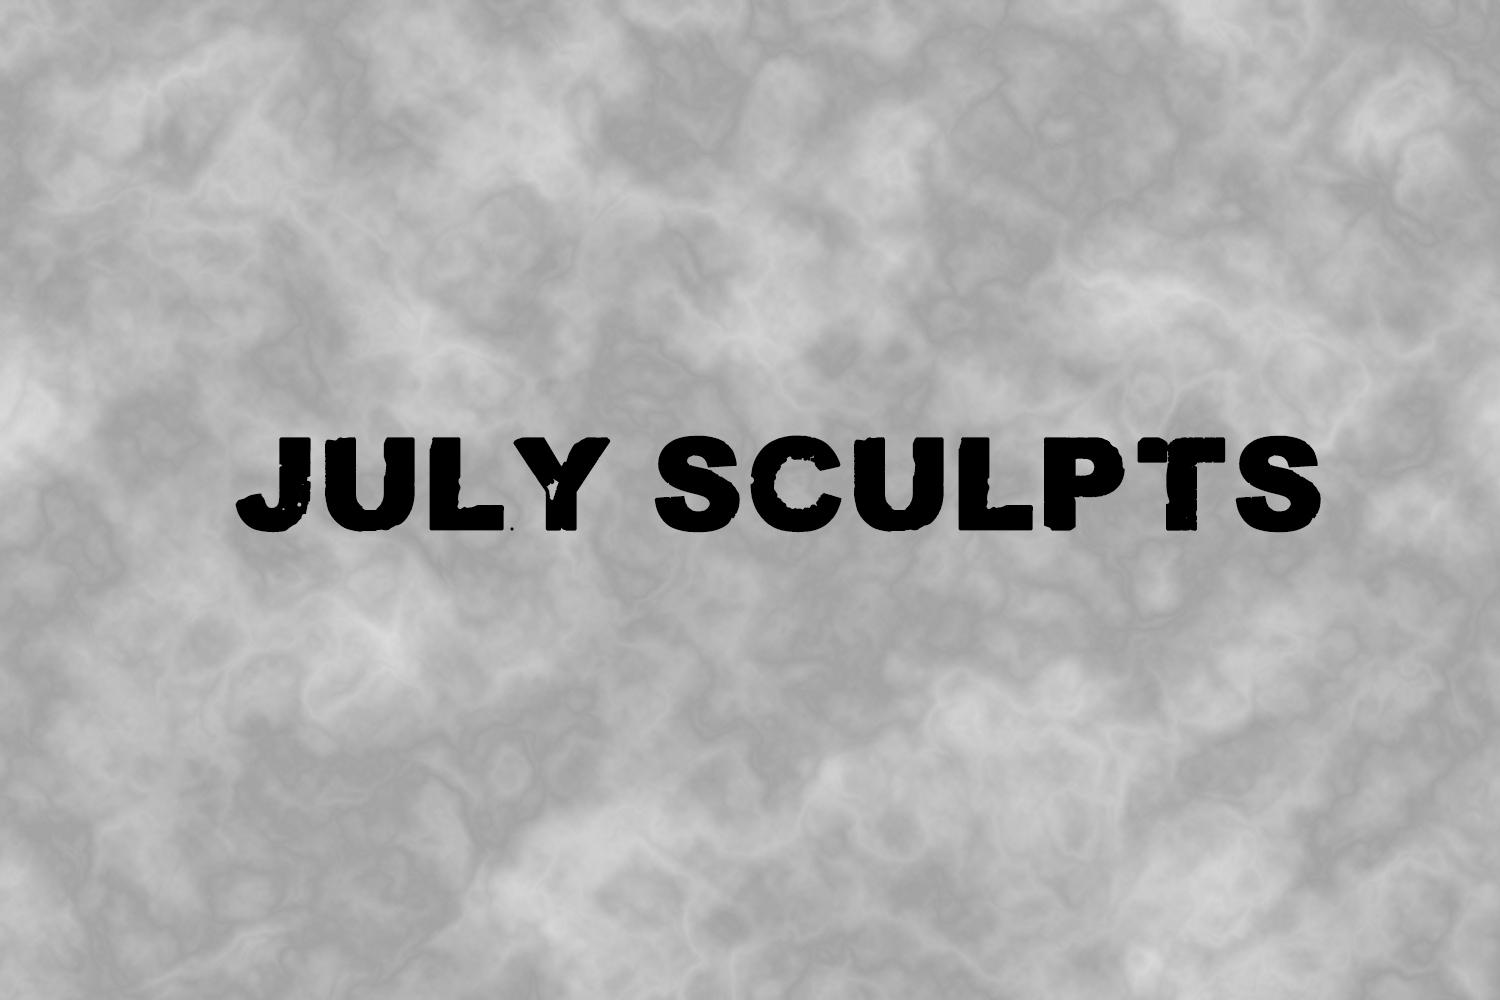 July Sculpts